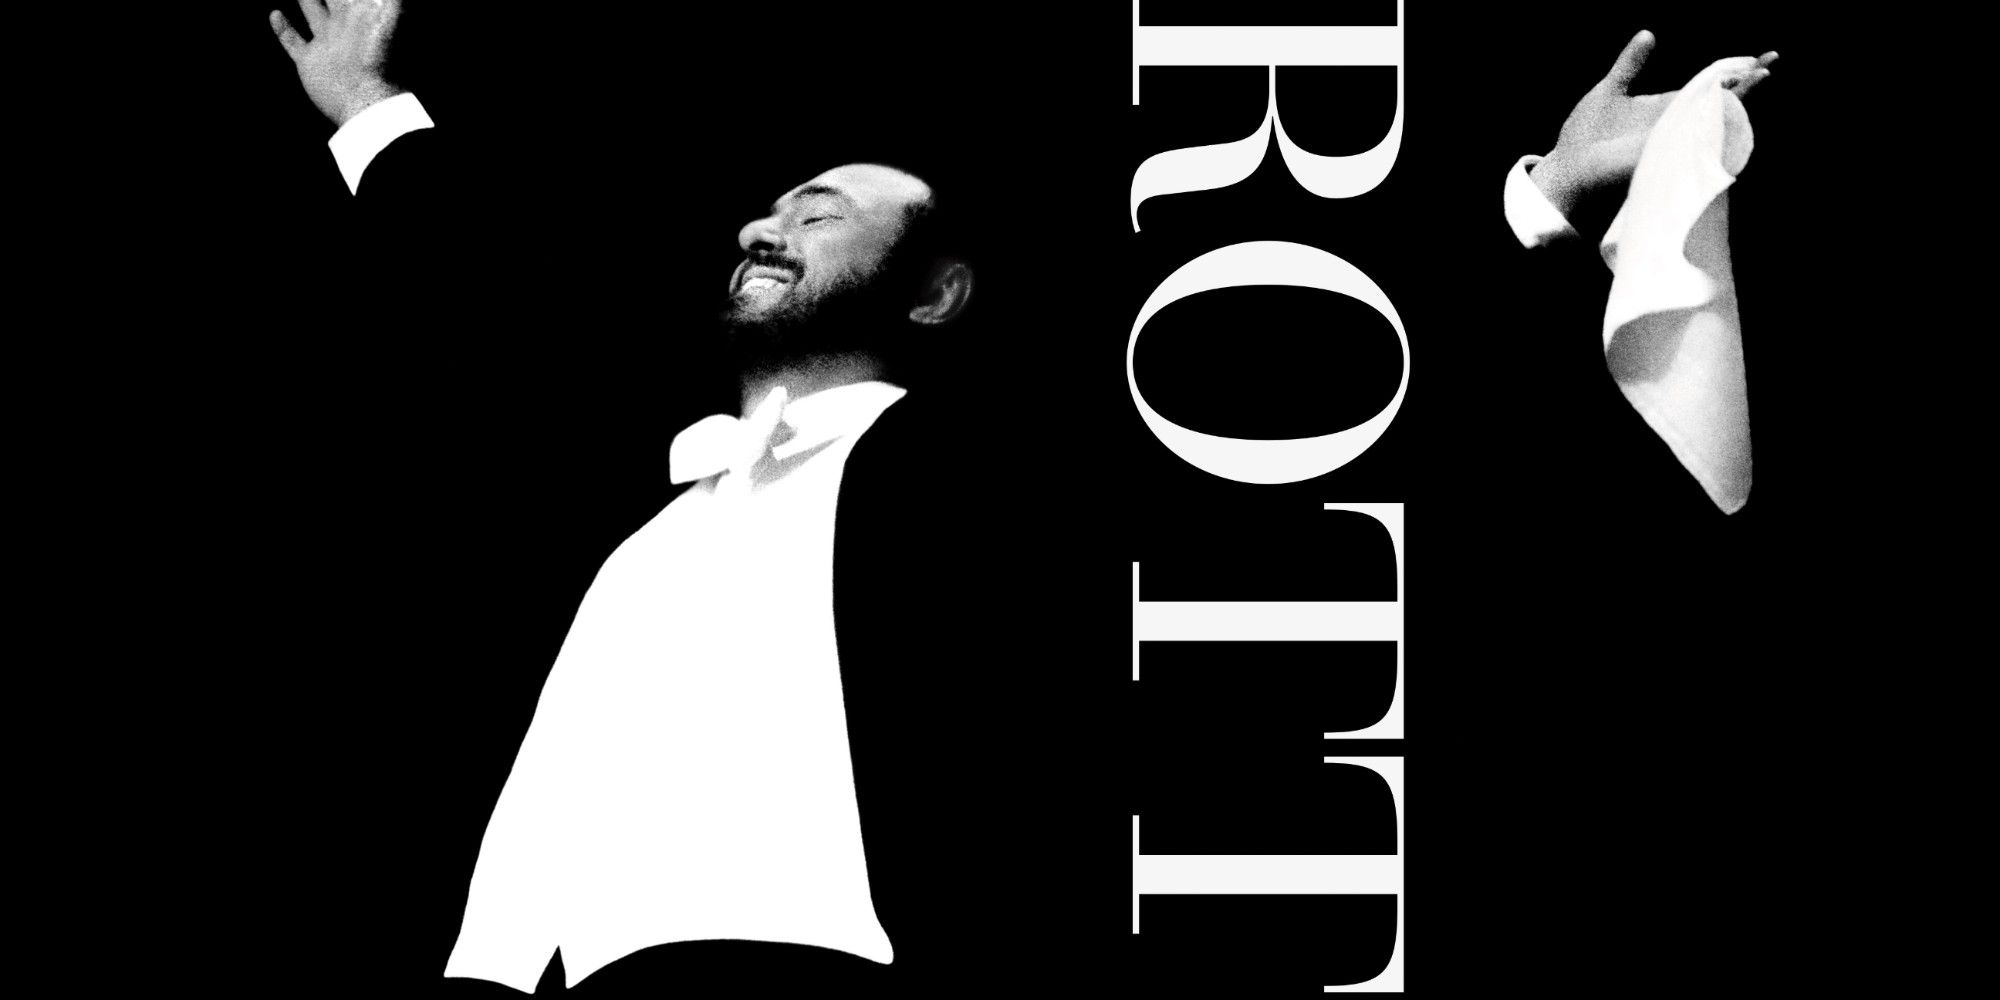 Pavarotti 2019 movie poster